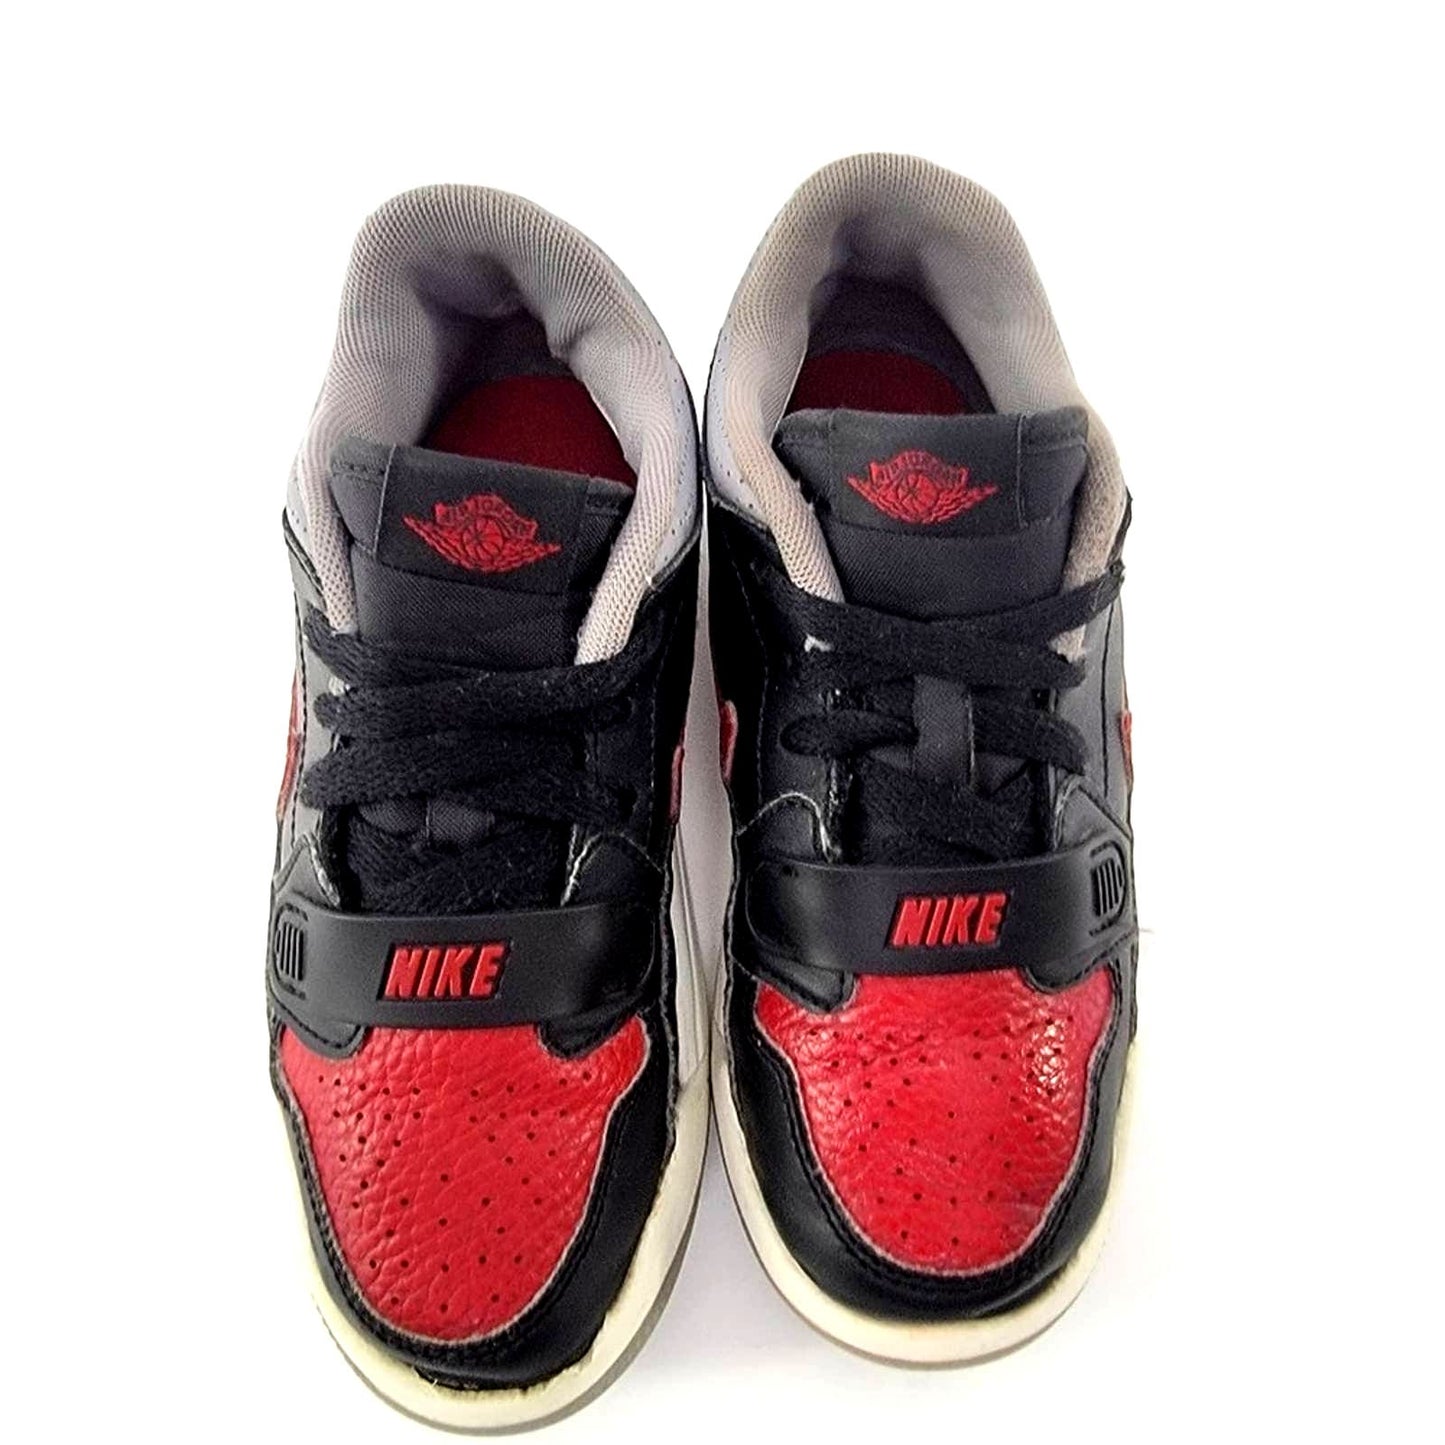 Nike Air Jordan Legacy 312 Low (PS) Bred Cement - (Kids) - 12.5 C